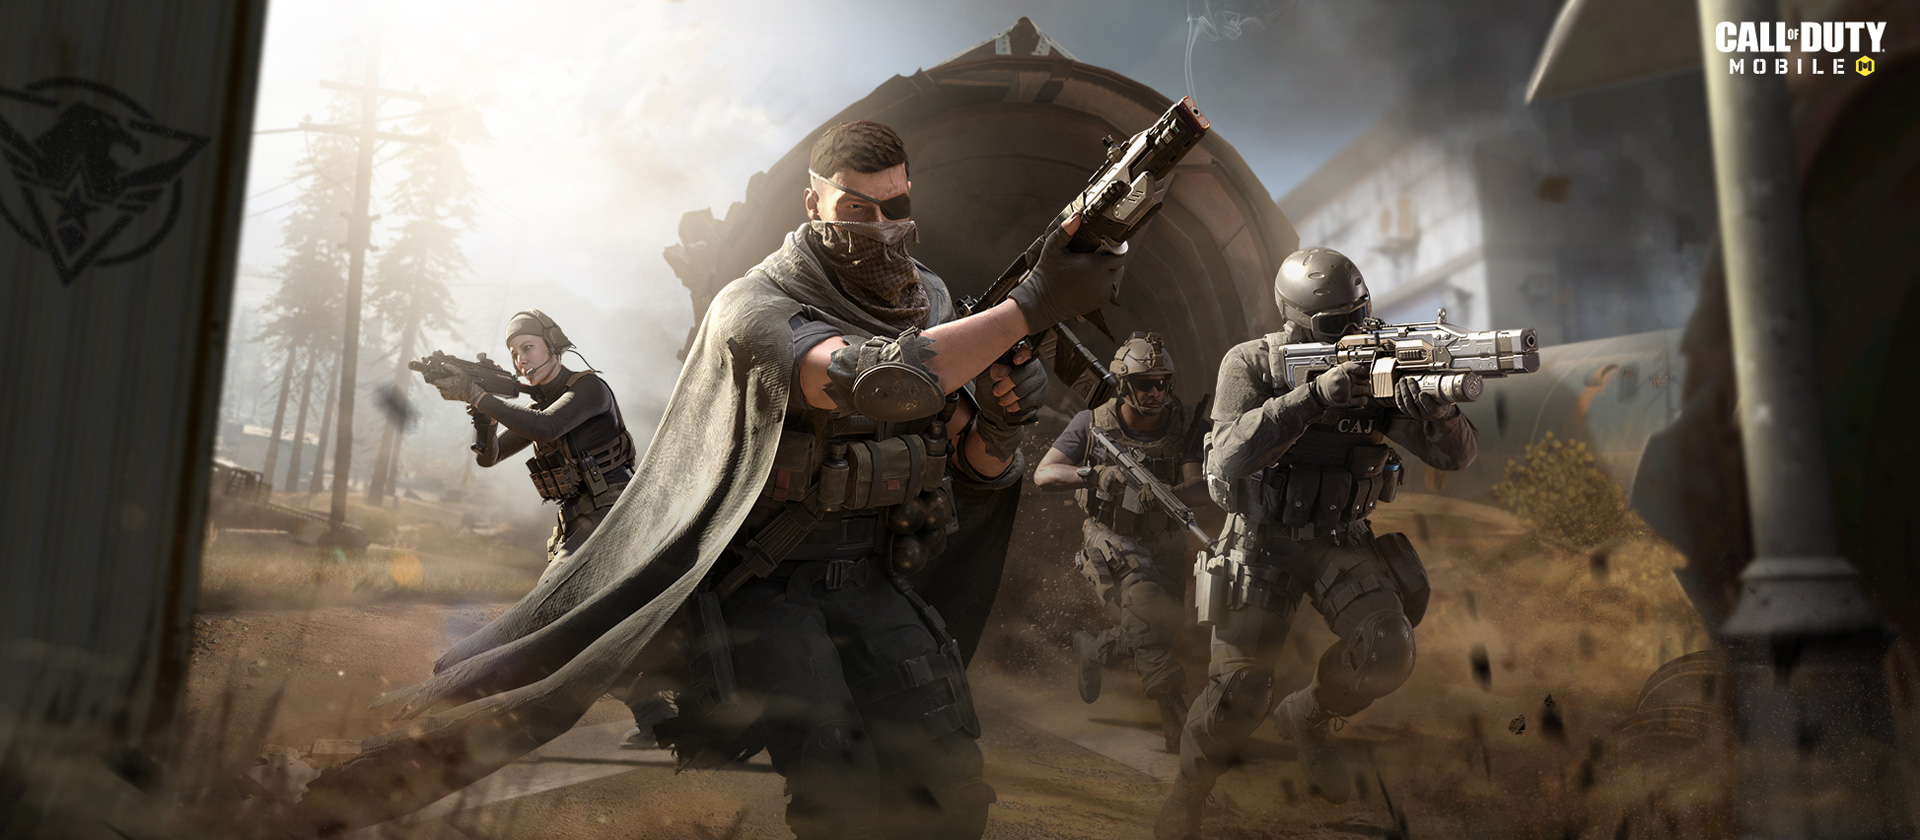 7 сезон Call of Duty: Mobile - новые карты, событие "Кибератака", новый боевой пропуск и многое другое